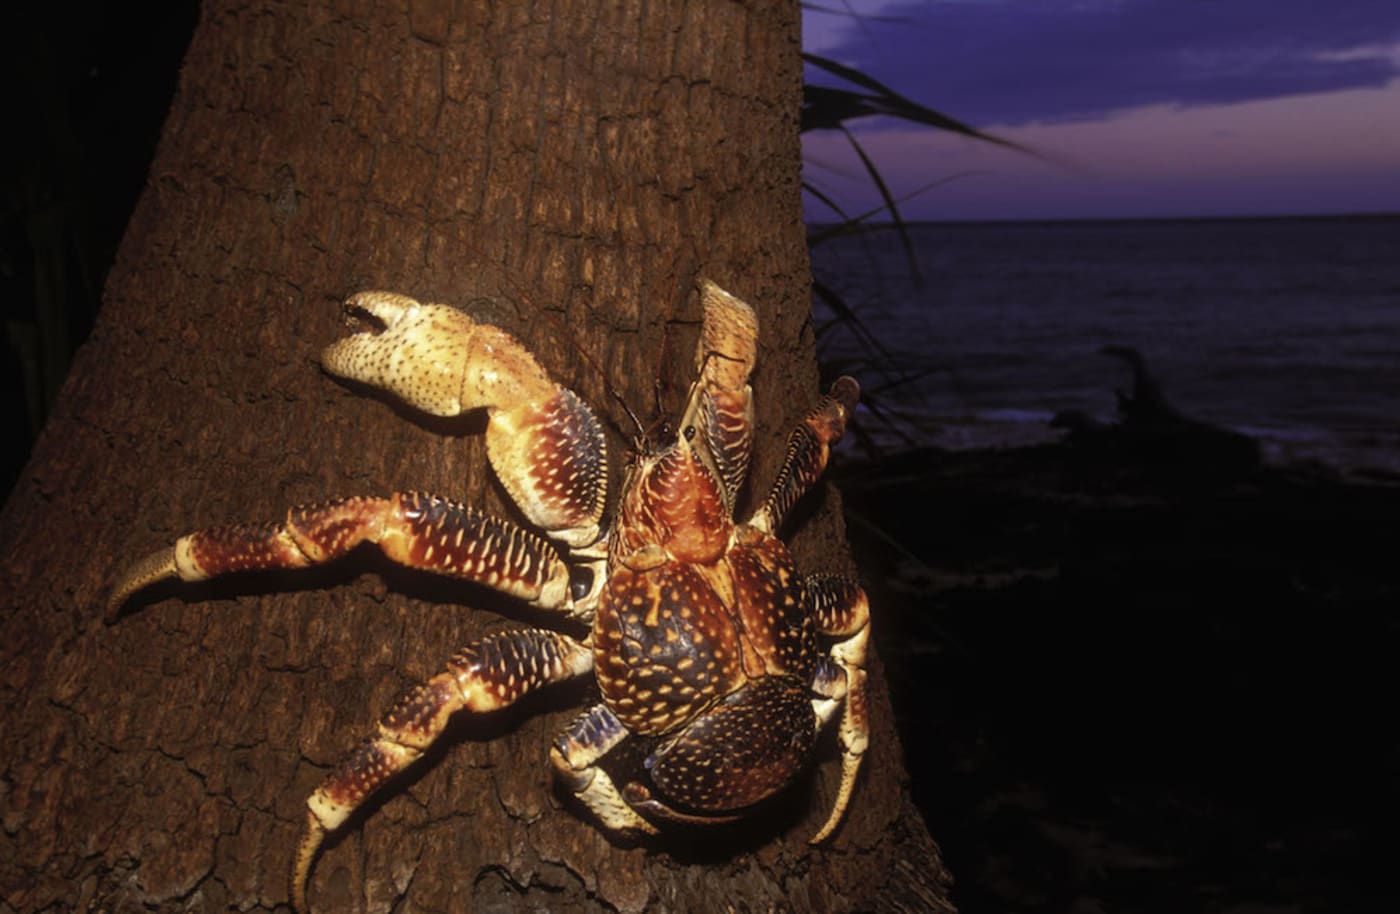 Giant coconut crab (Birgus latro)